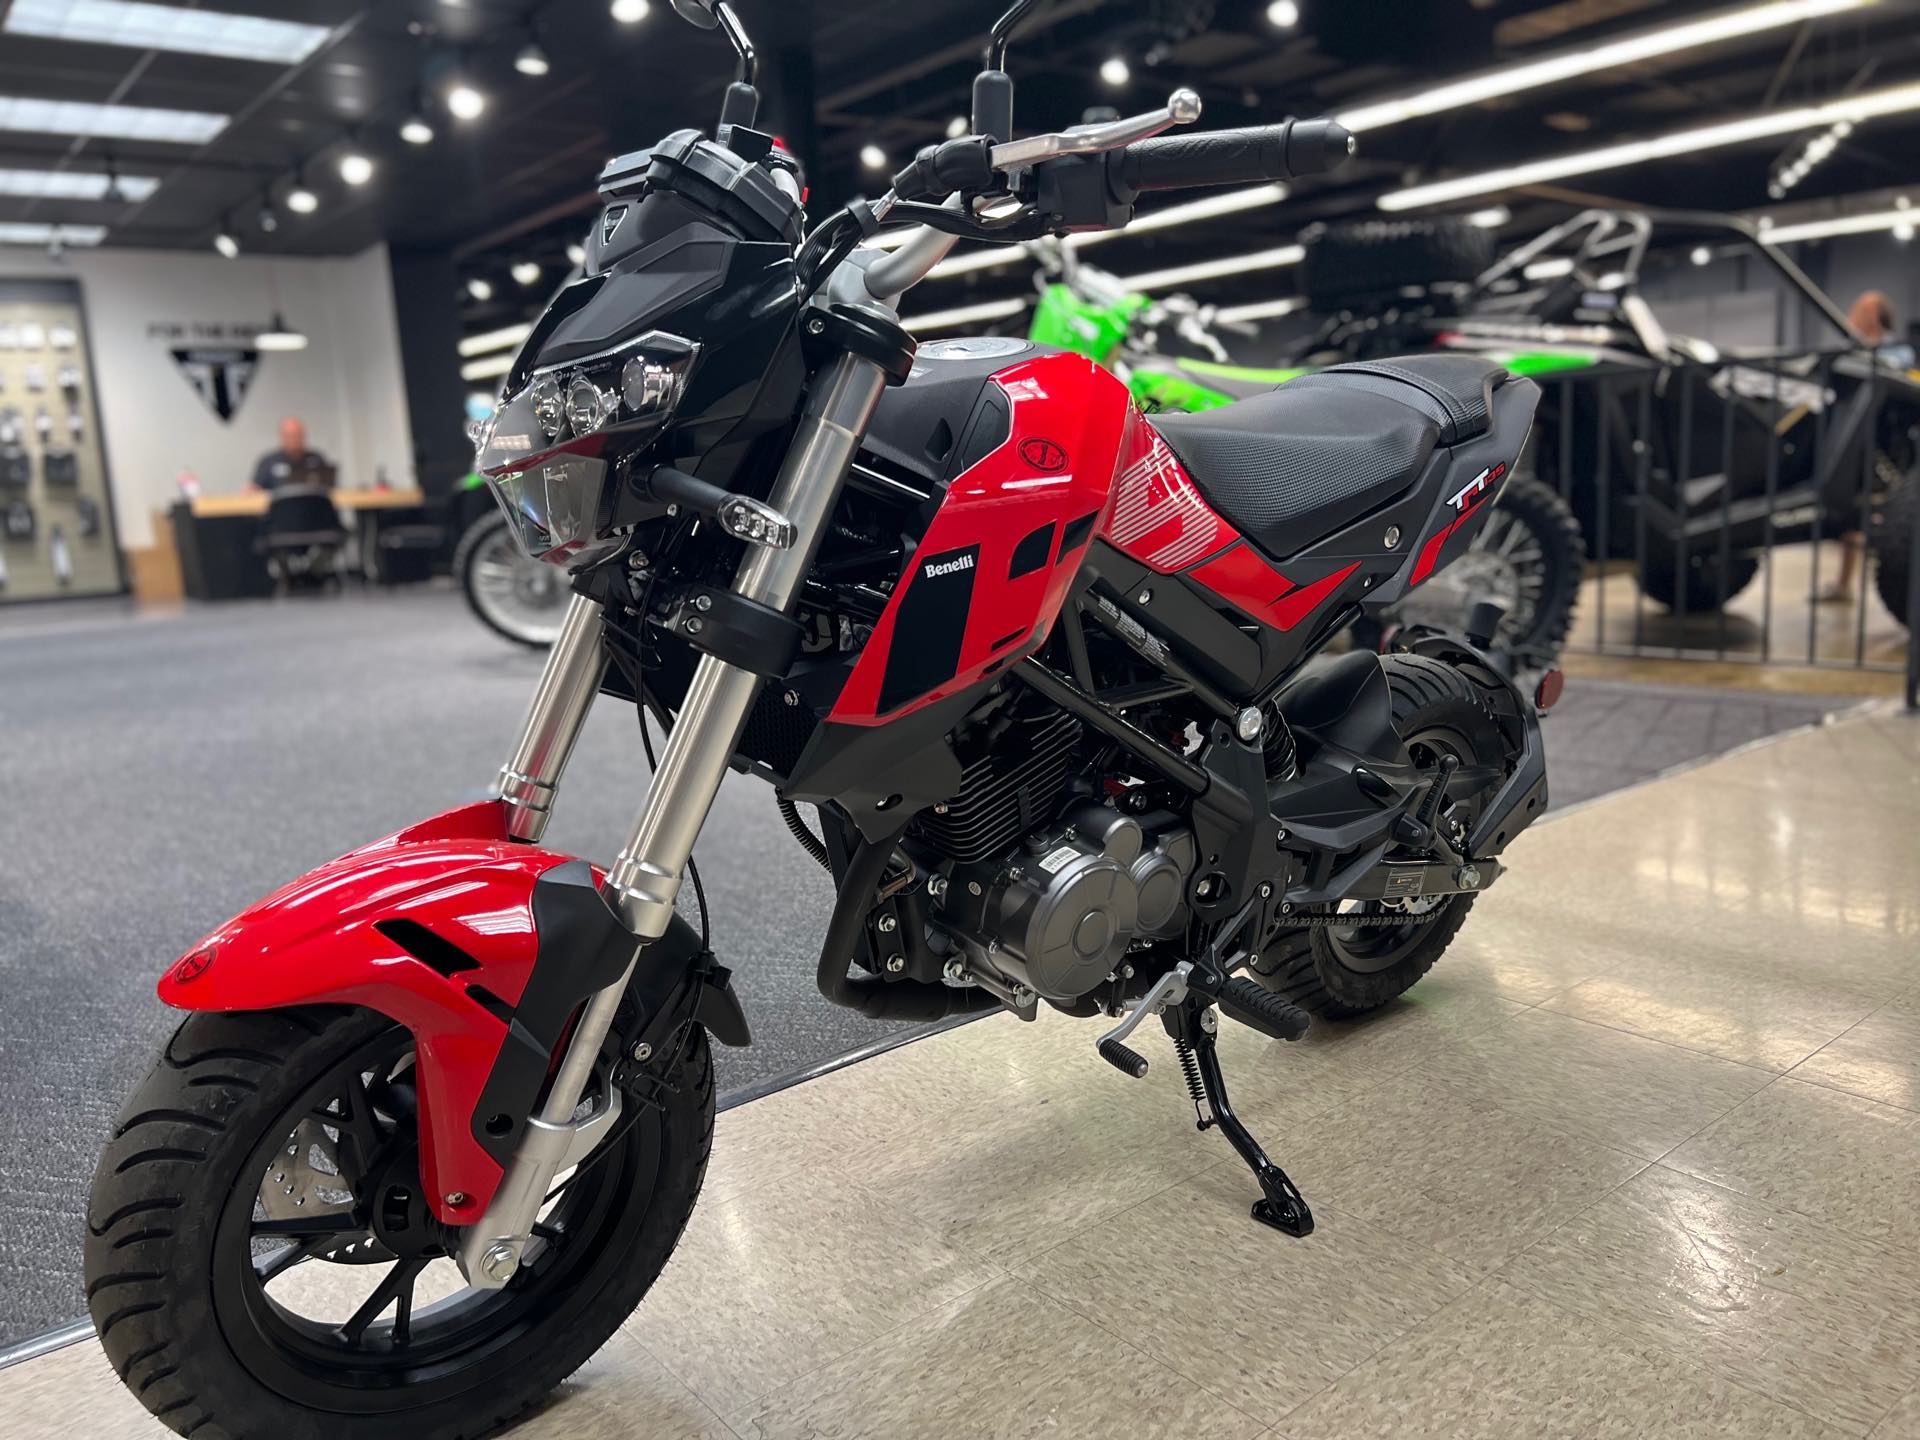 2022 Benelli TNT 135 at Sloans Motorcycle ATV, Murfreesboro, TN, 37129